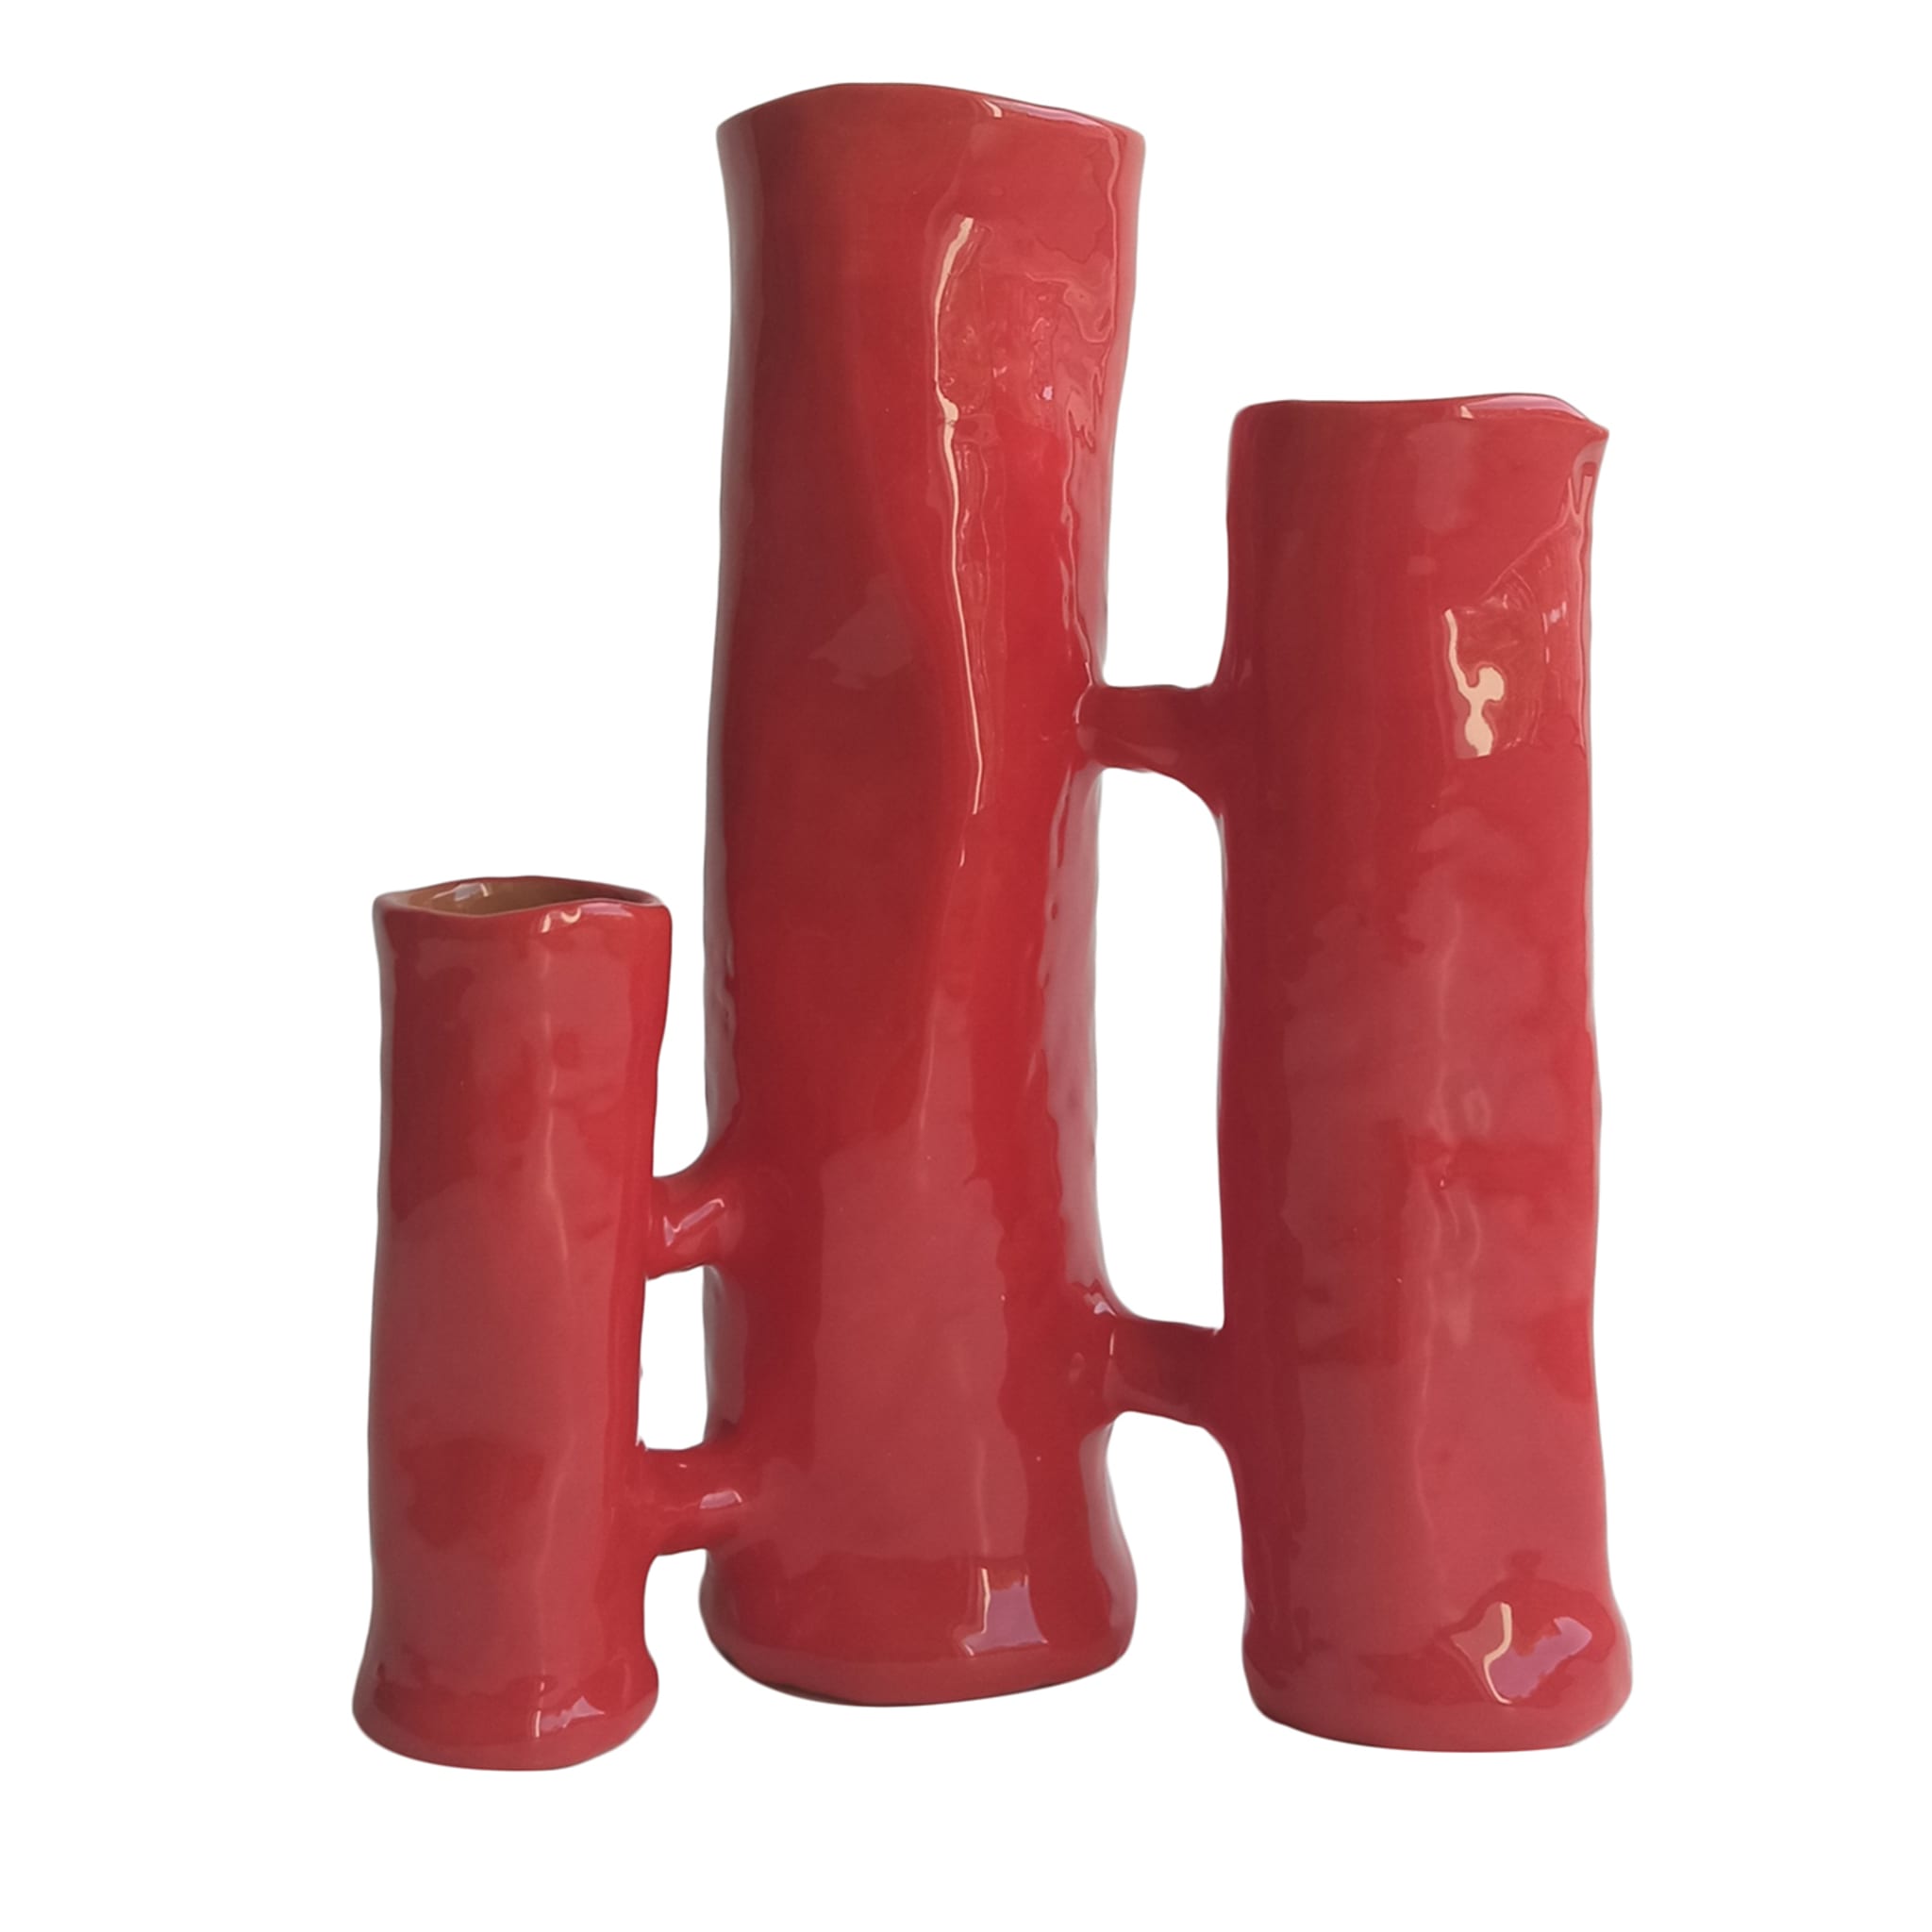 Vasi Comunicanti 3-Element Red Vase/Sculpture - Main view